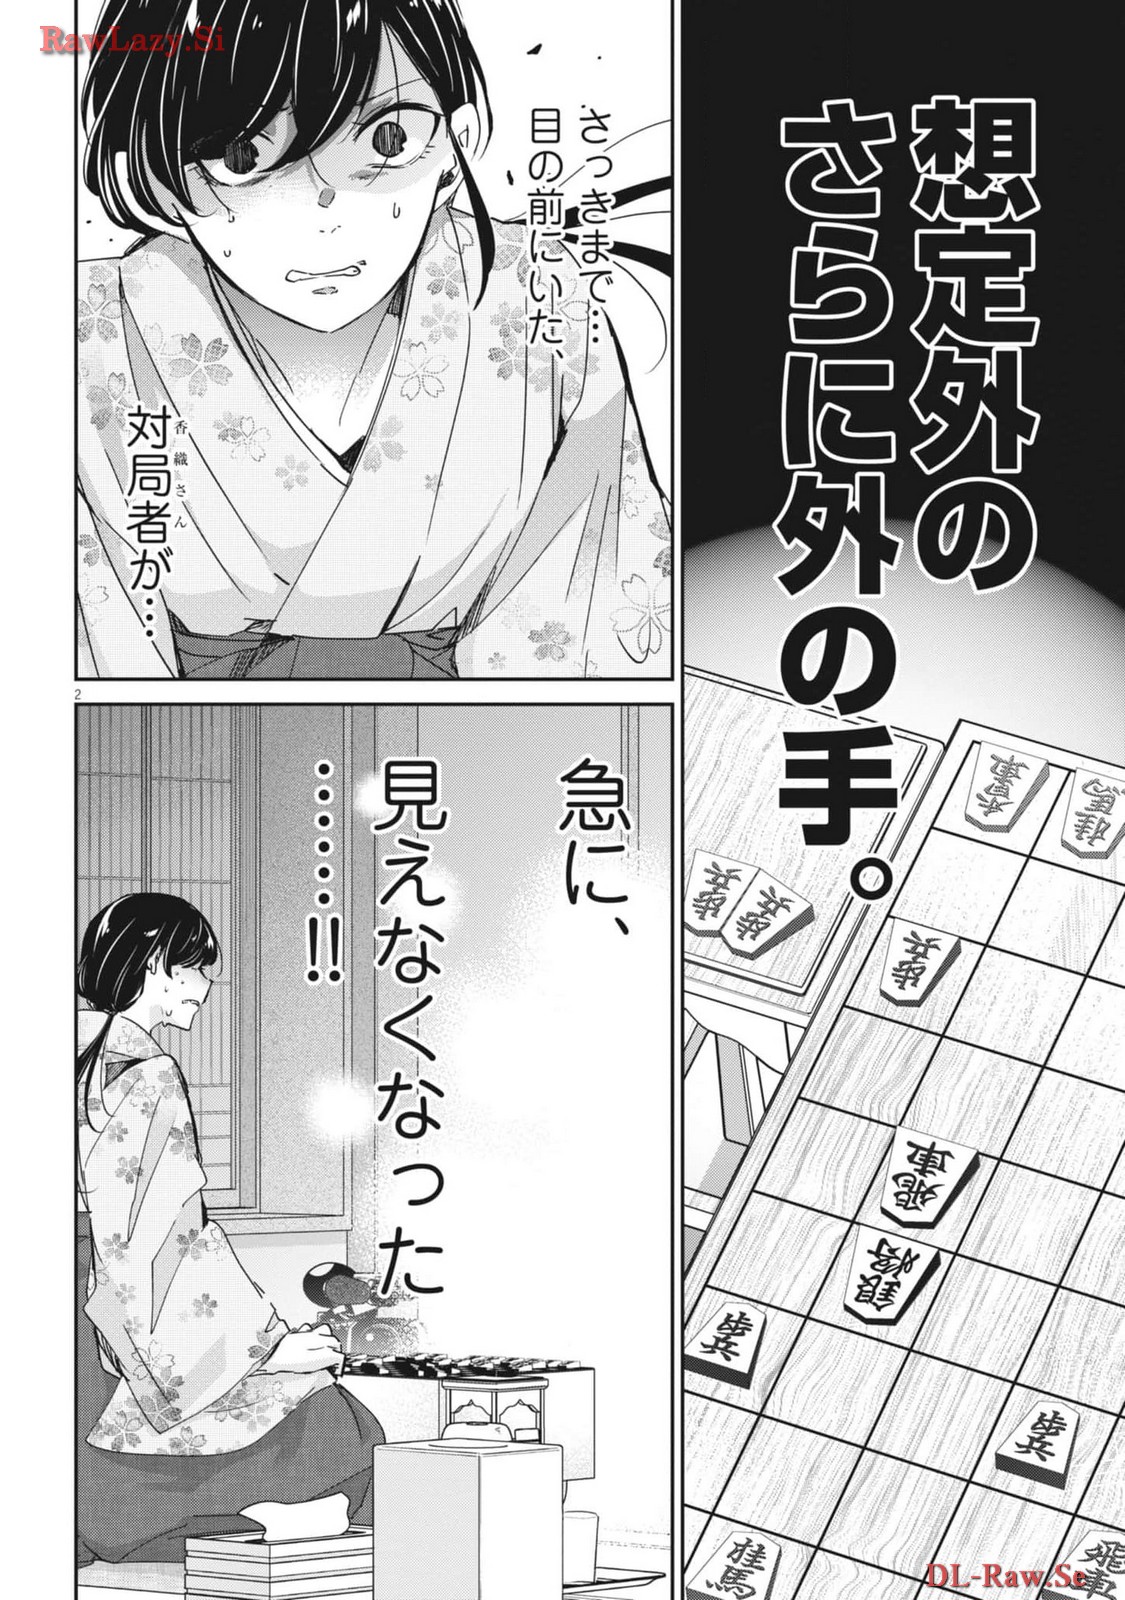 Eisei Otome no Tatakai-kata - Chapter 94 - Page 2